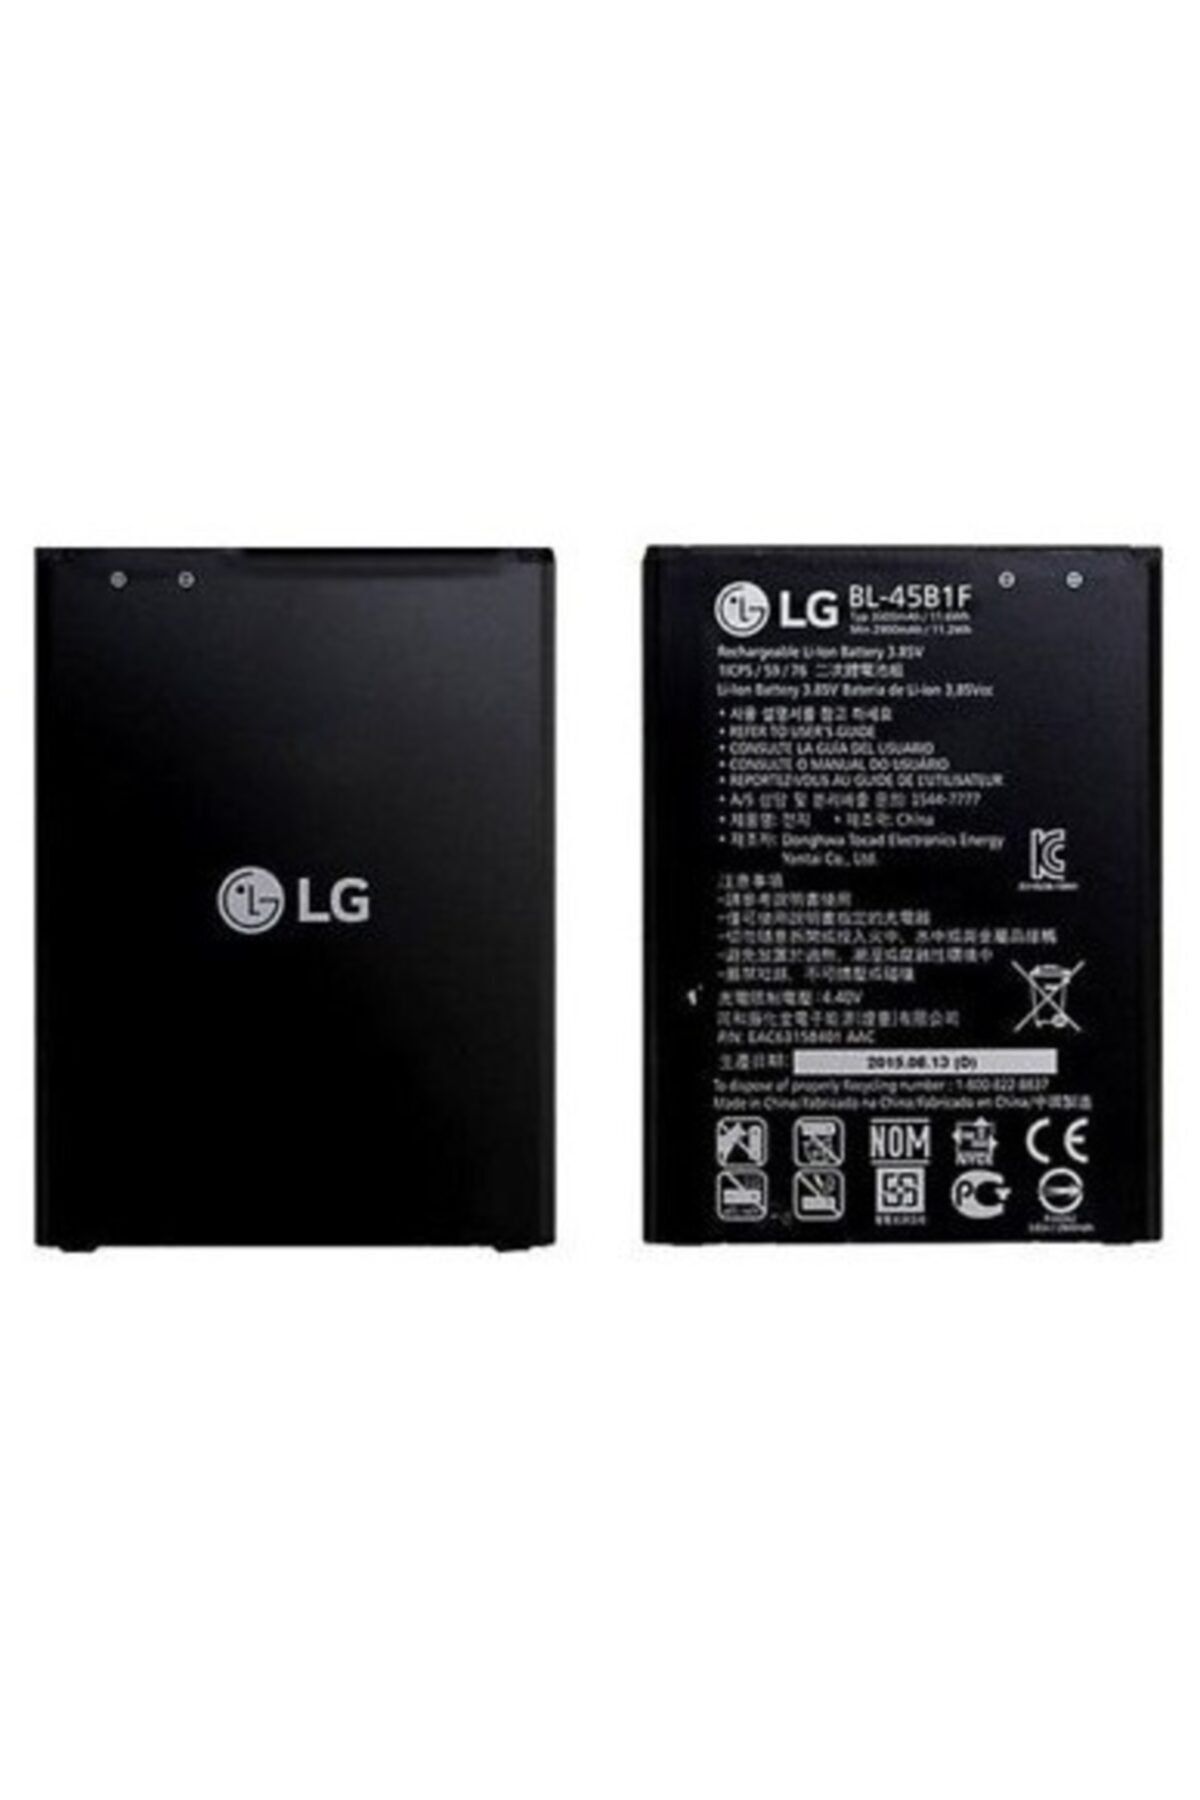 LG Stylus 2 (bl-45b1f) K520 Batarya Pil